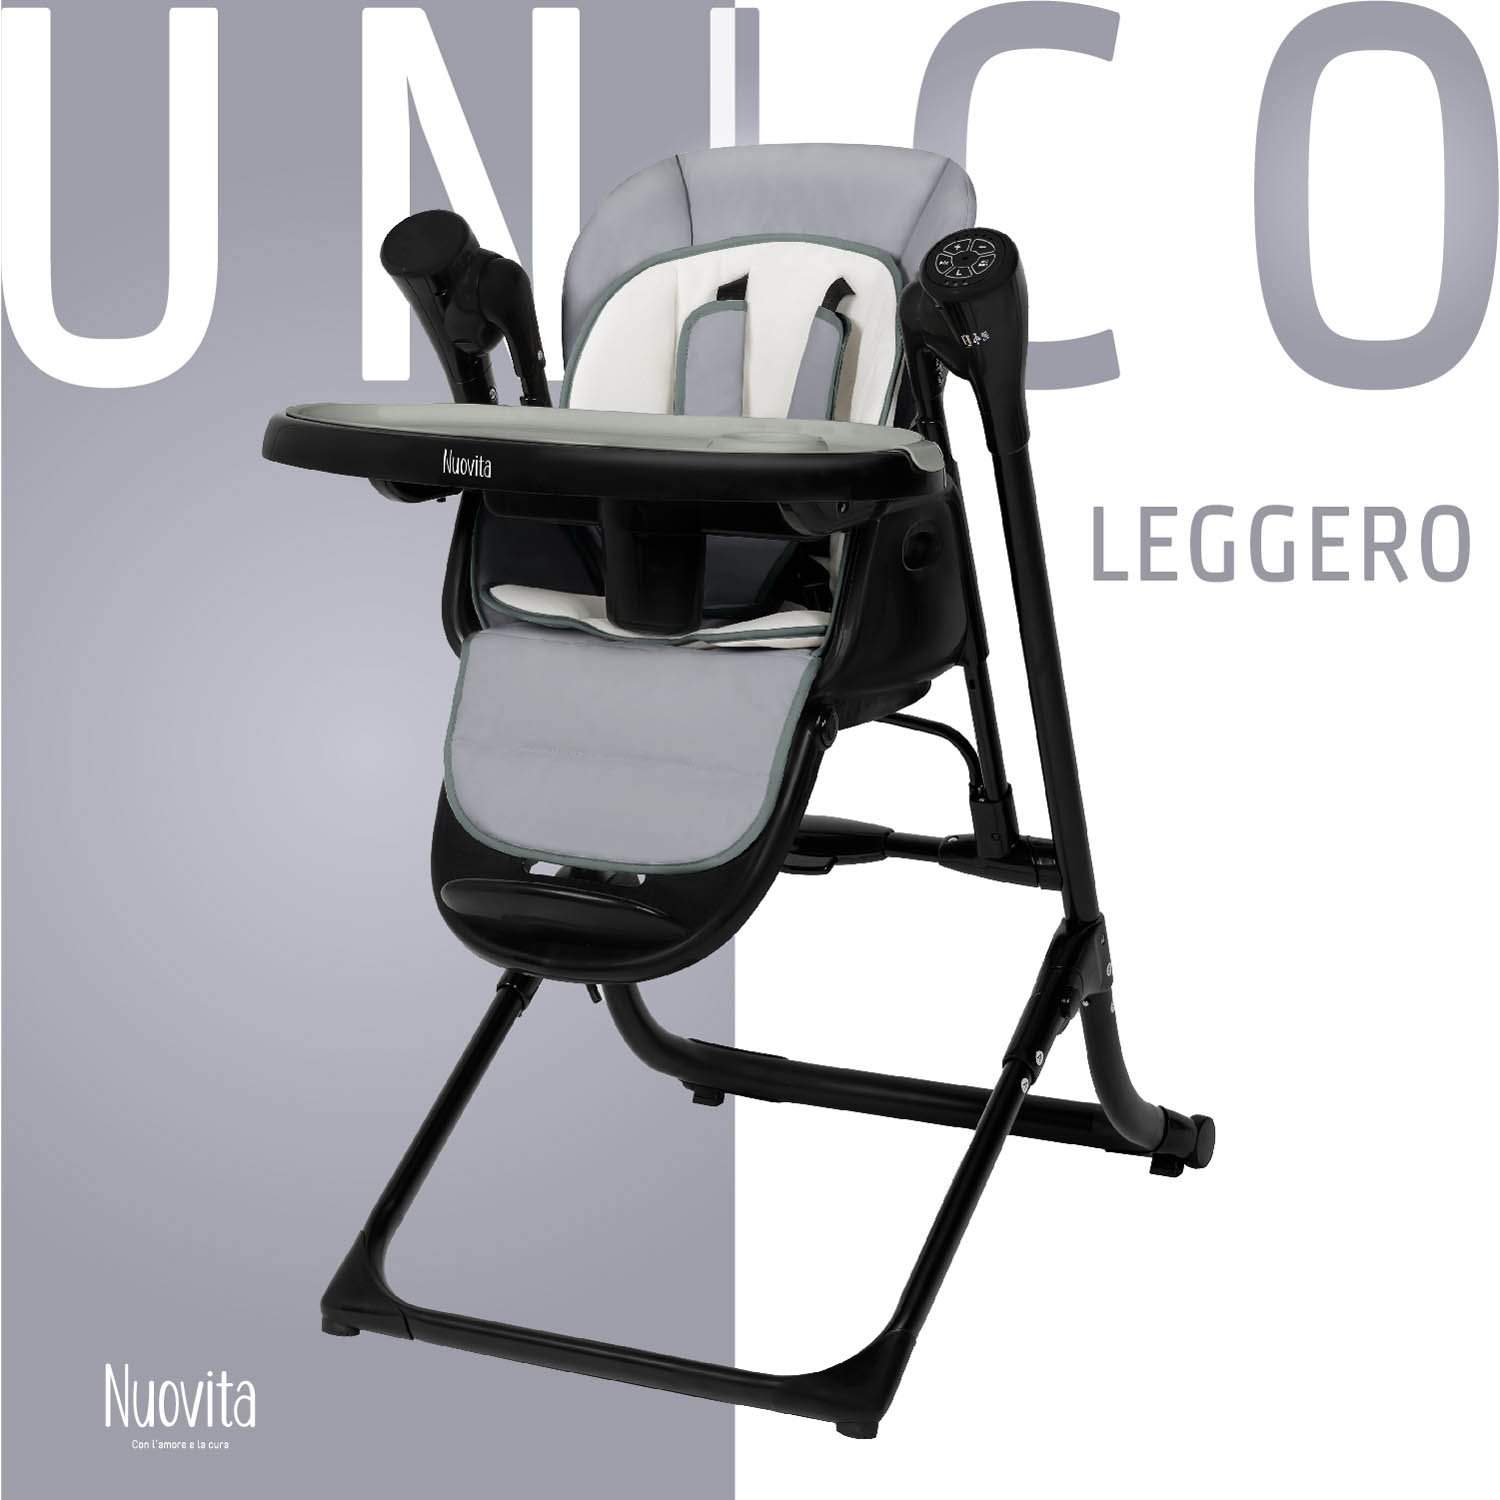 Стульчик для кормления с электронной функцией качения Nuovita Unico Leggero Nero серый стульчик для кормления nuovita unico leggero